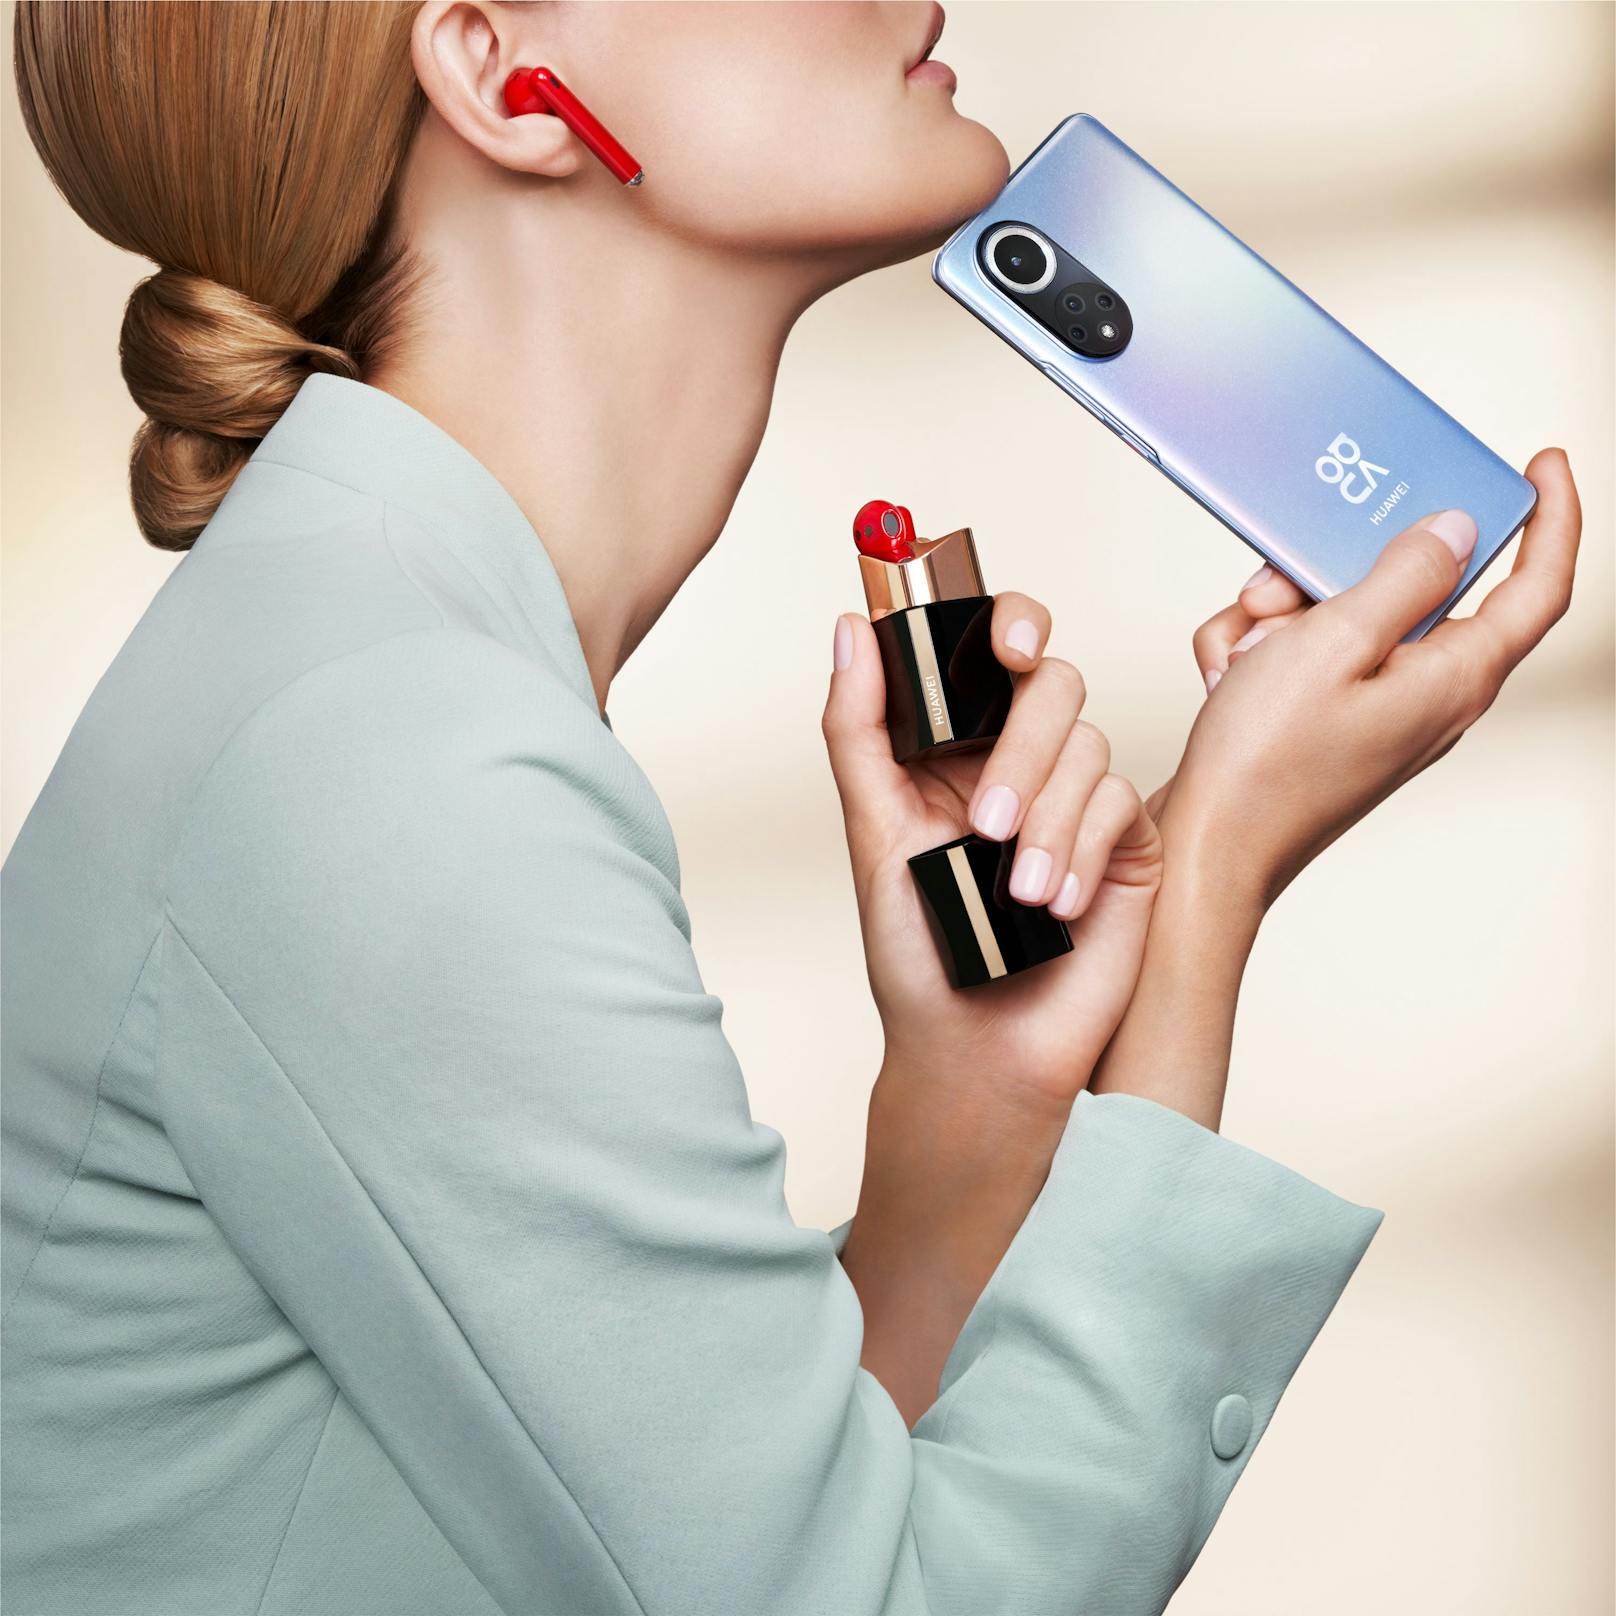 ...unter den In-Ear-Kopfhörern und kombiniert laut Huawei "perfekt luxuriöses Design mit modernstem, hochauflösendem Sound". Das neue Gerät verfügt über ein lippenstiftähnliches Gehäuse aus Edelstahl mit schillerndem Glanzfinish.